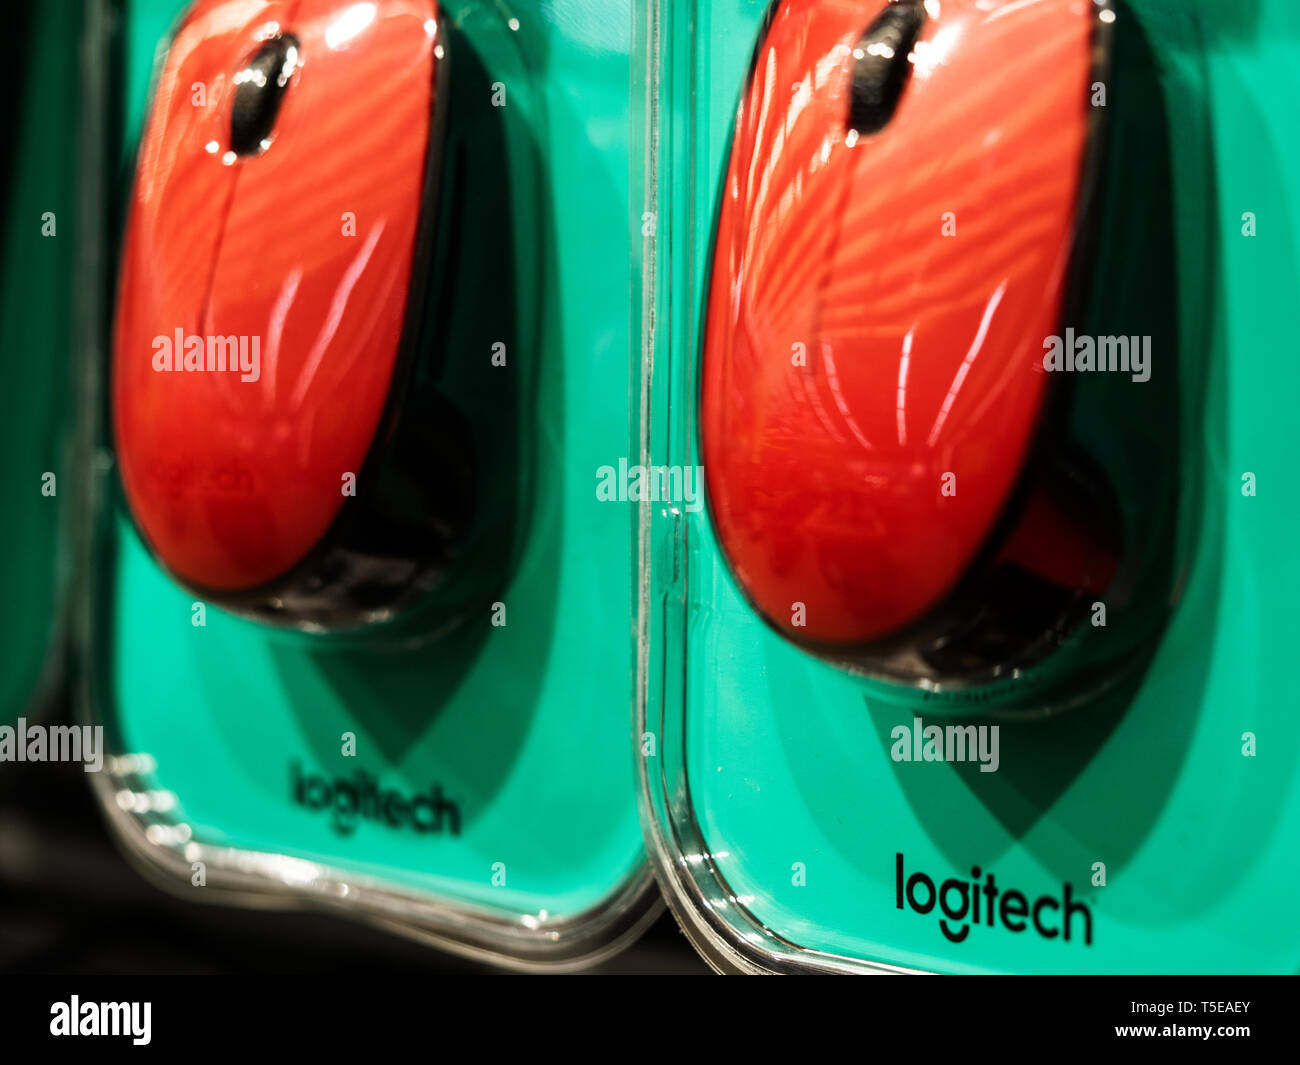 Logitech mouse immagini e fotografie stock ad alta risoluzione - Alamy